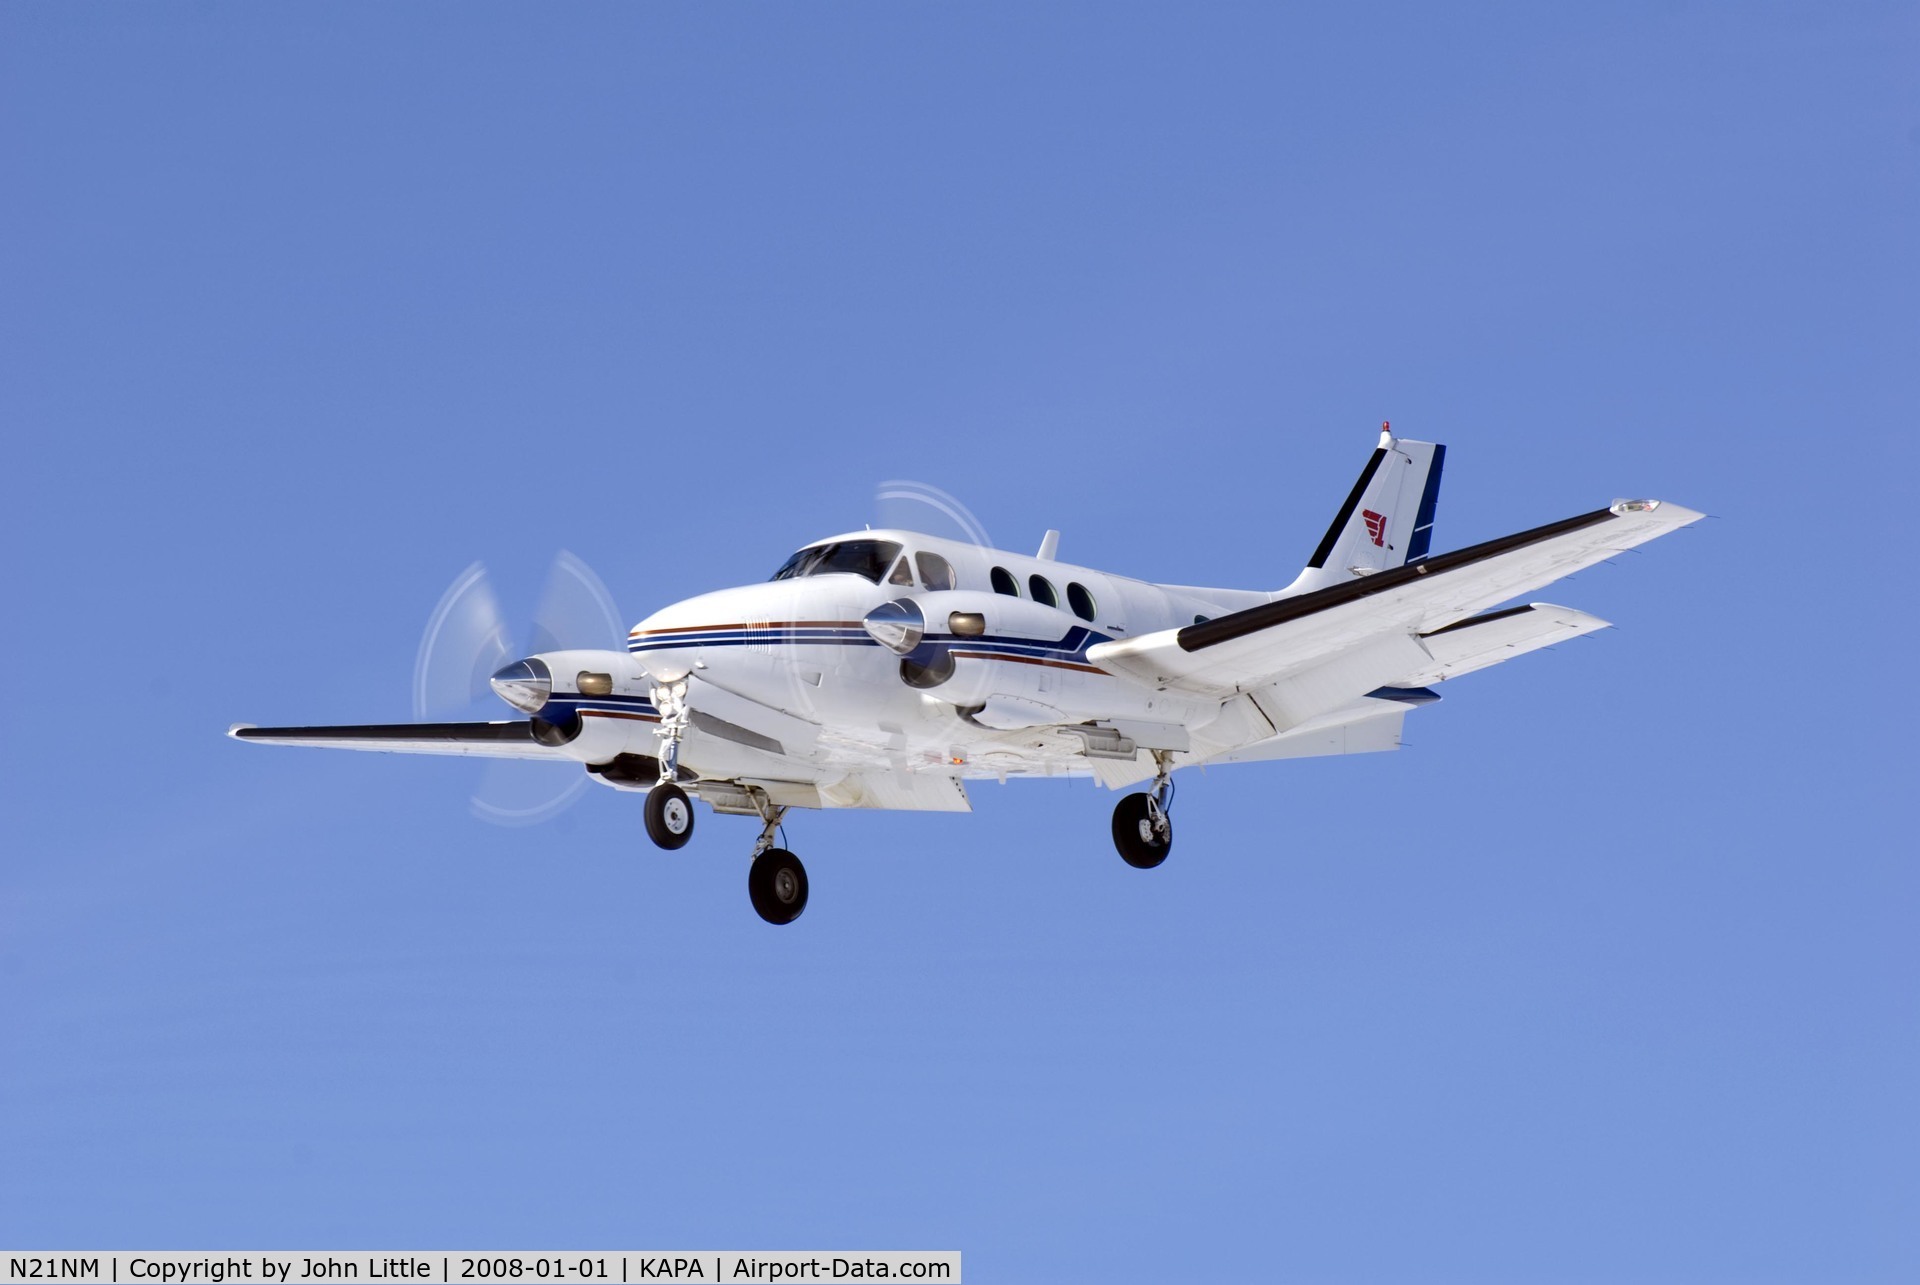 N21NM, Beech E-90 King Air C/N LW-336, Approach to 17L